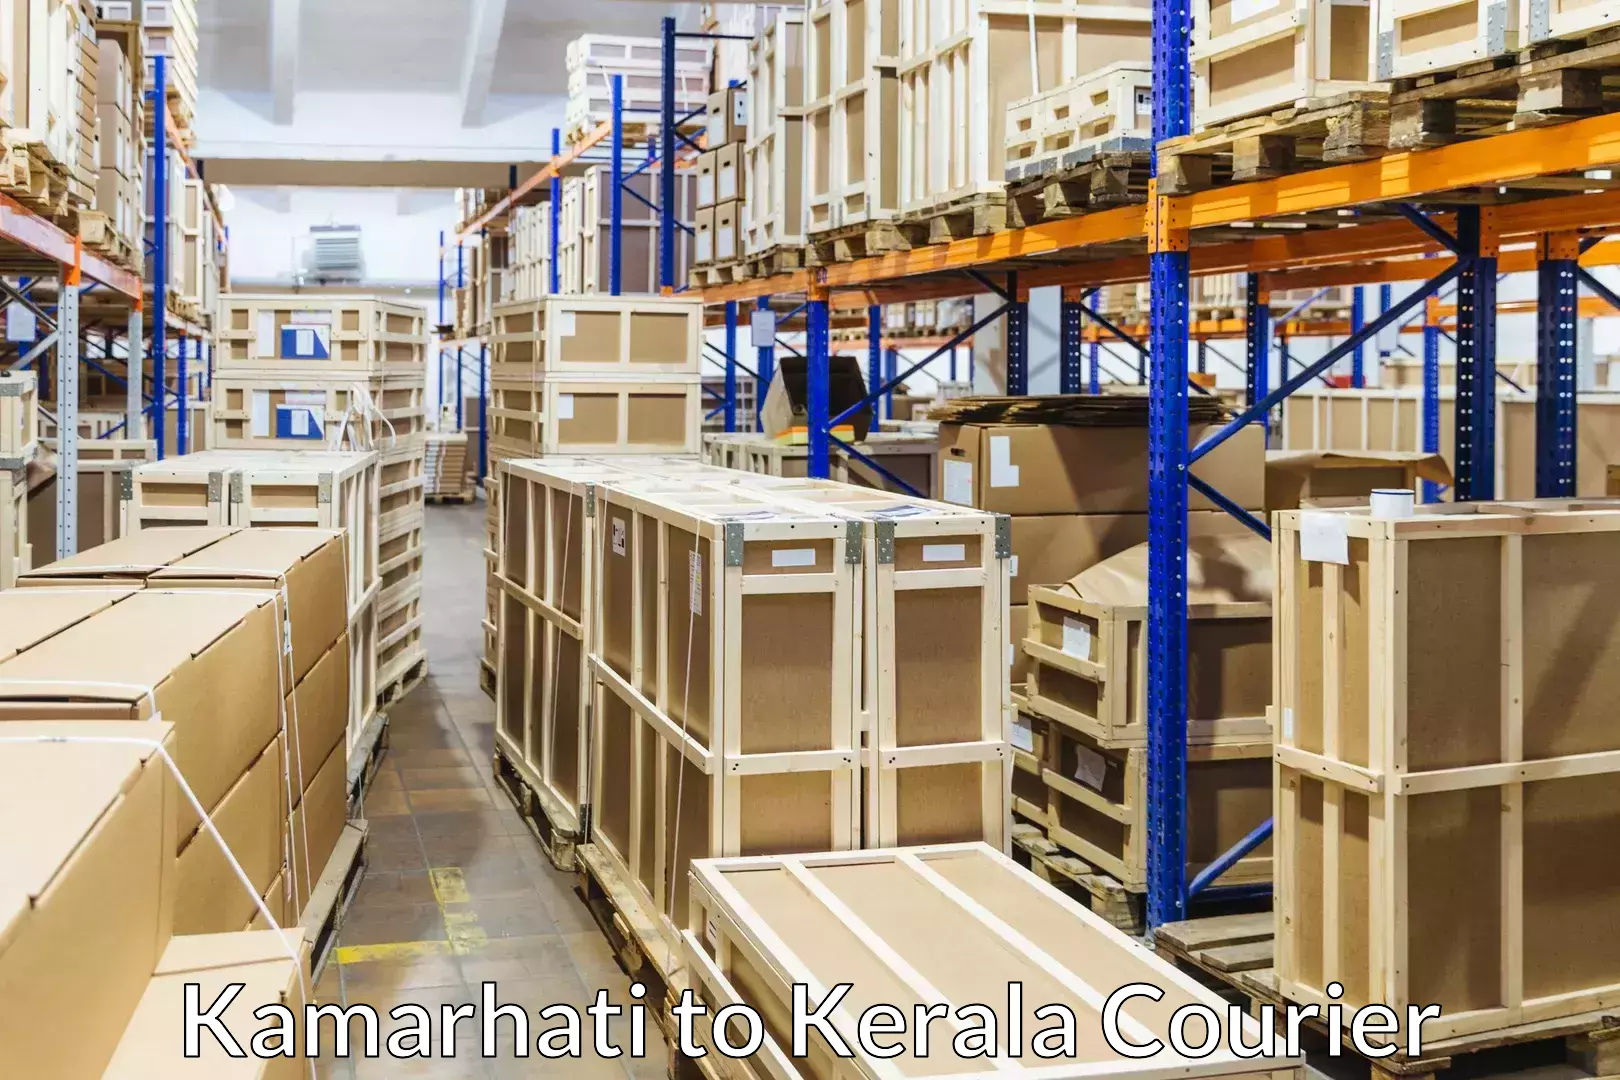 Reliable movers Kamarhati to Kayamkulam